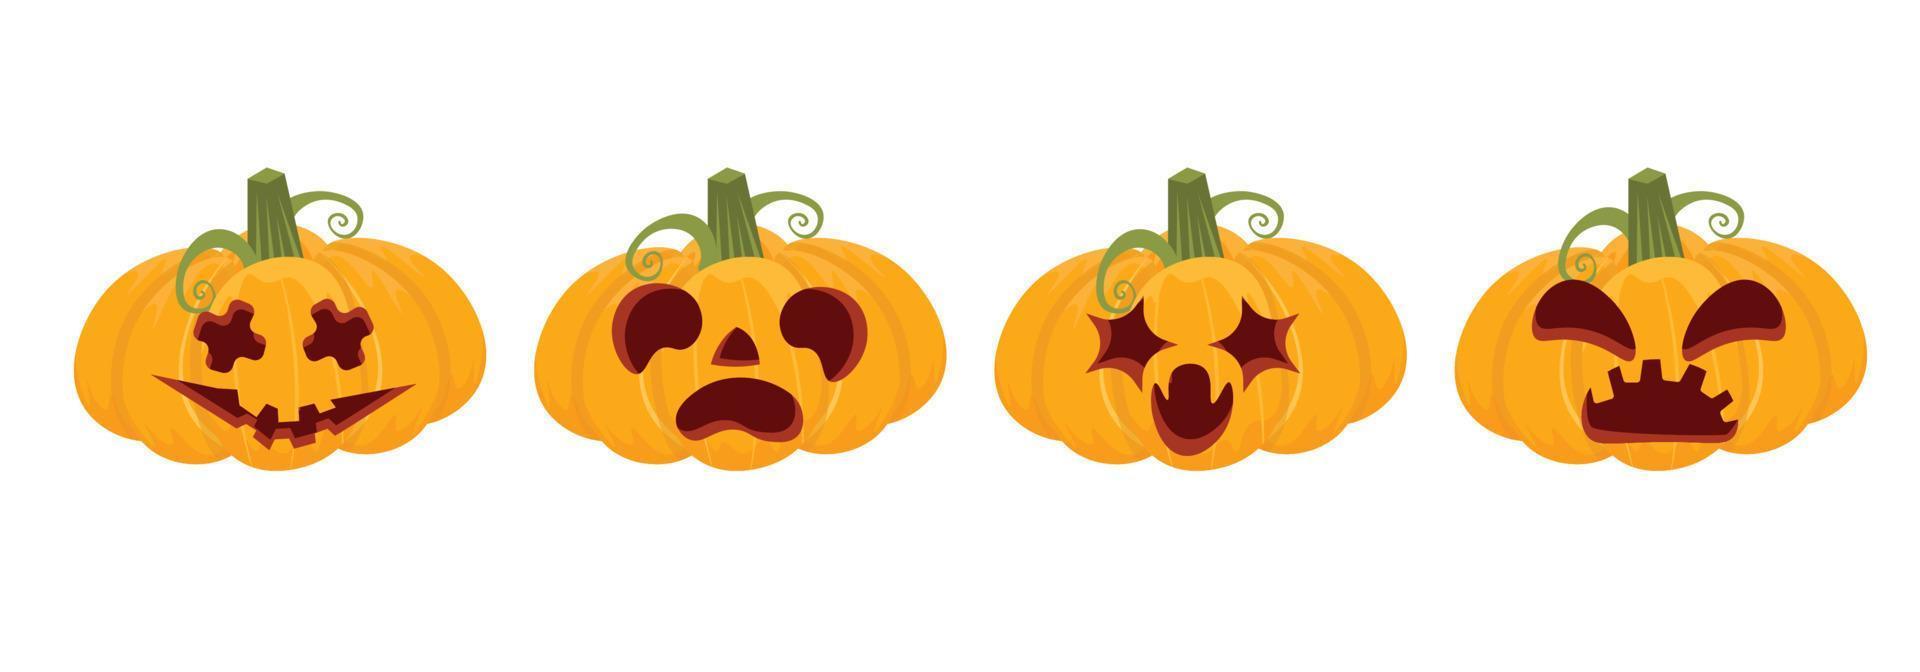 Halloween-Kürbis-Set. geschnitzte Kürbis-Cartoon-Ikone. Gespenster beängstigendes Smiley-Gesicht. Vektor-Illustration isoliert auf weißem Hintergrund vektor